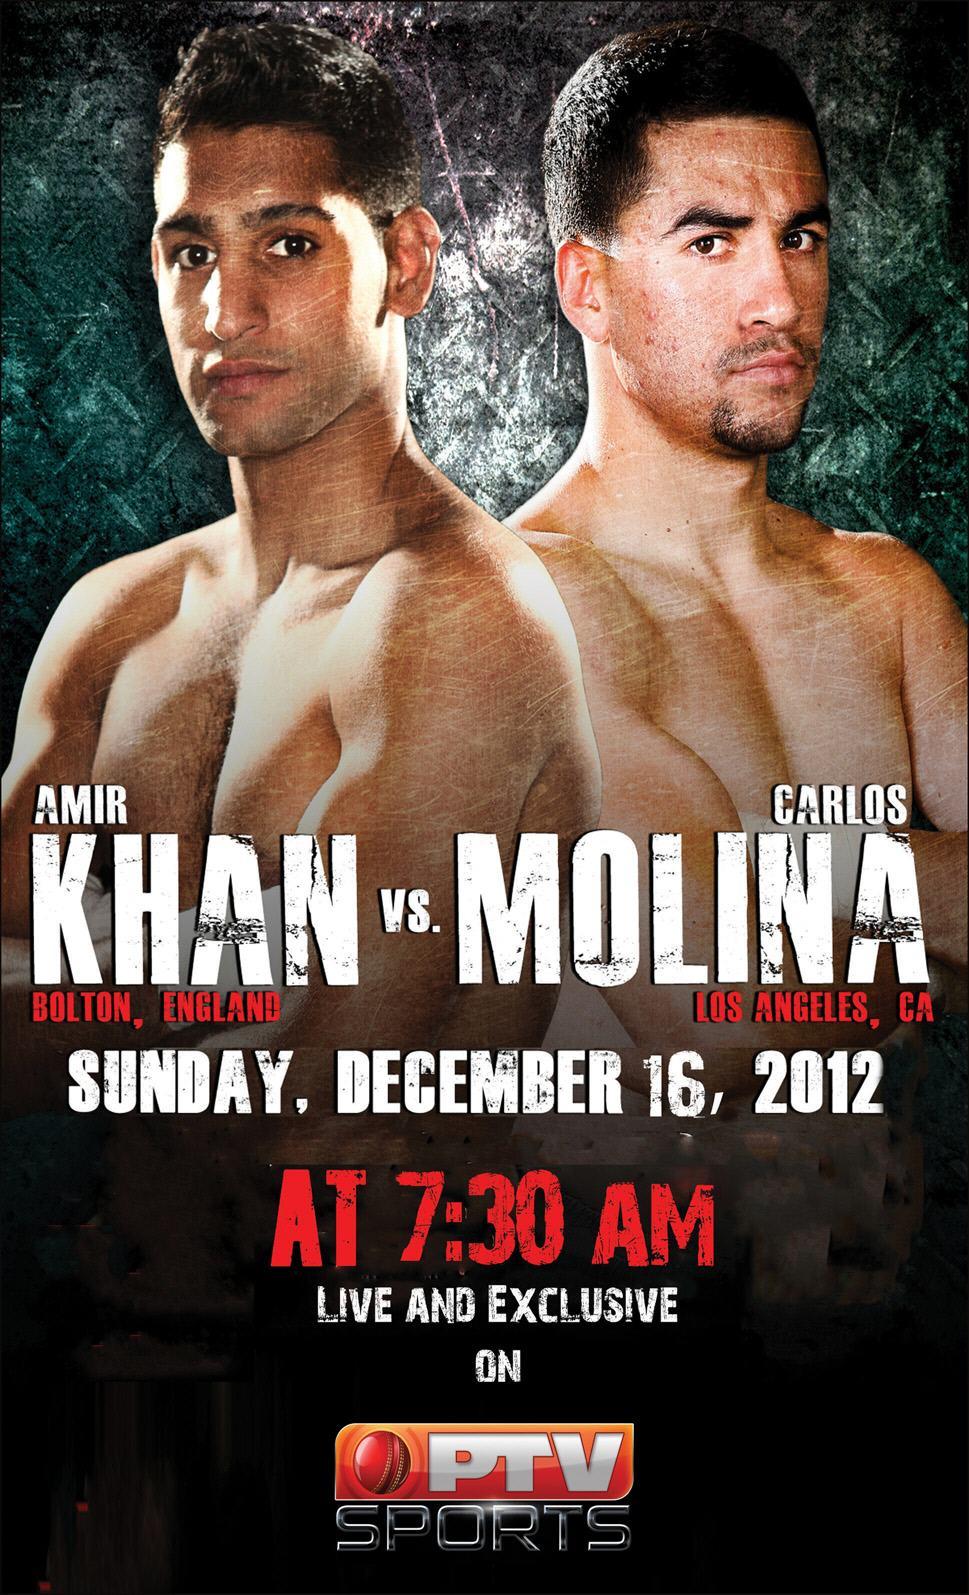 Amir khan vs Carlos Molina